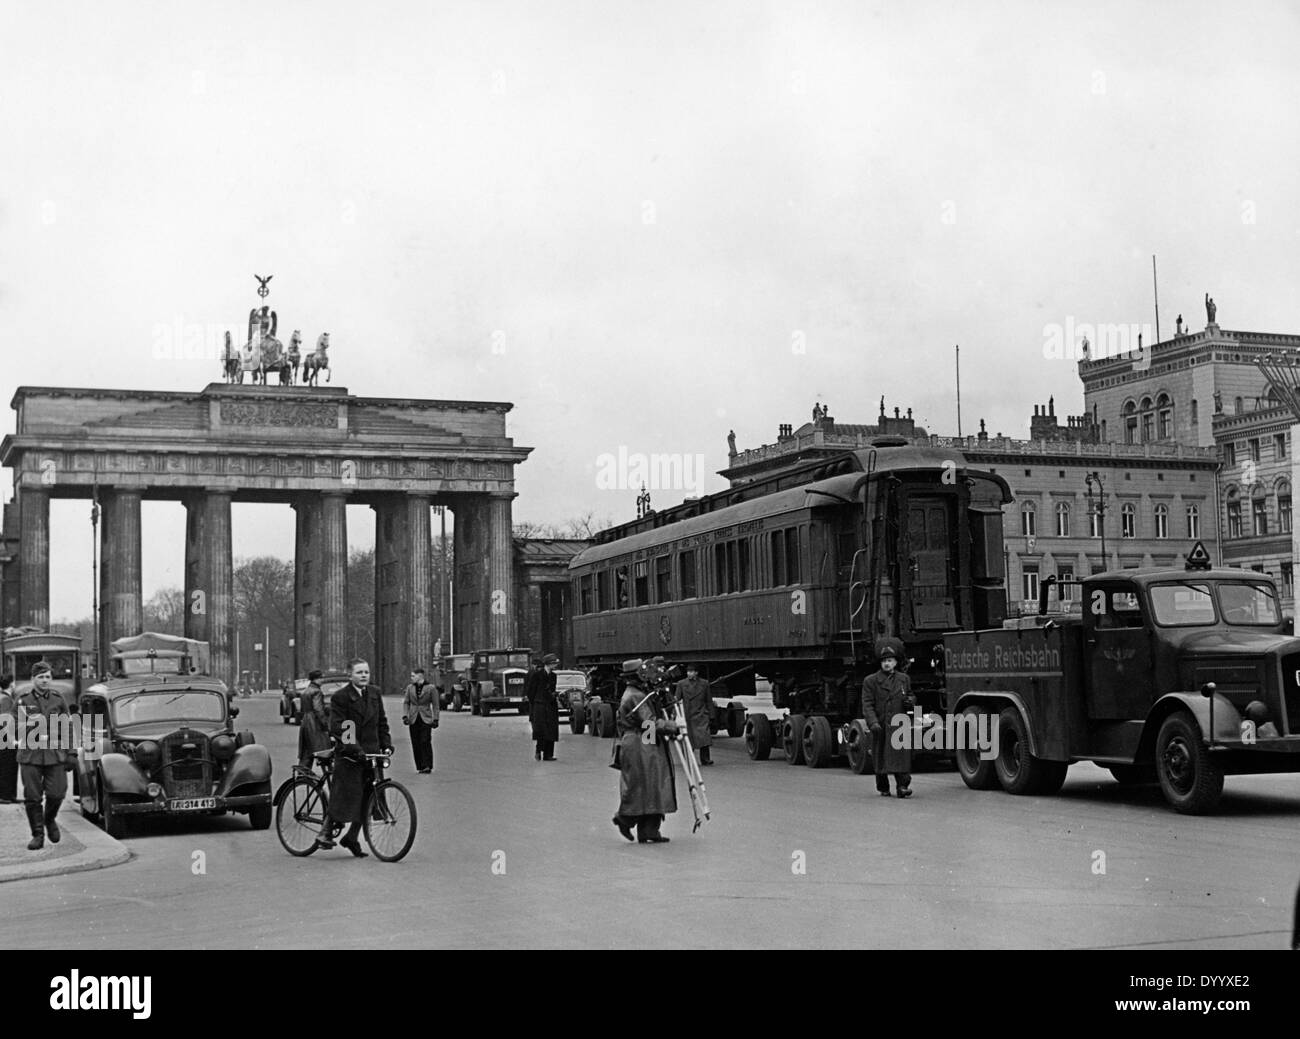 Eisenbahnwaggon, Denkmal und Hall Of Fame von Compiegne, 1940 Limousine von Compiègne in Berlin, 1940 Stockfoto